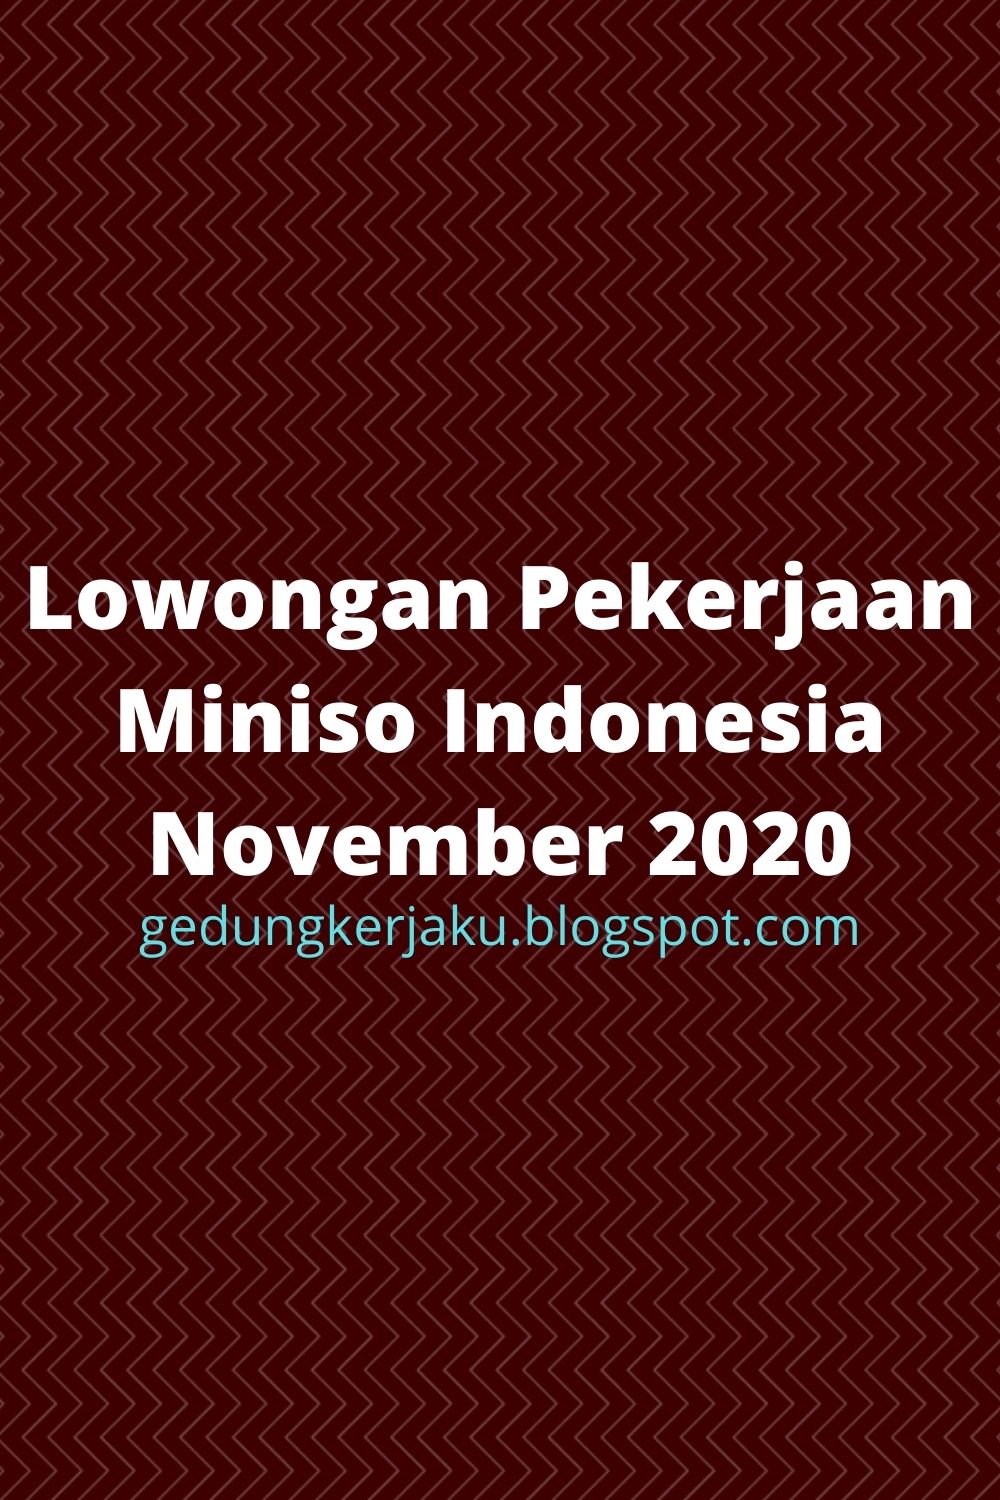 Lowongan Pekerjaan Miniso Indonesia November 2020